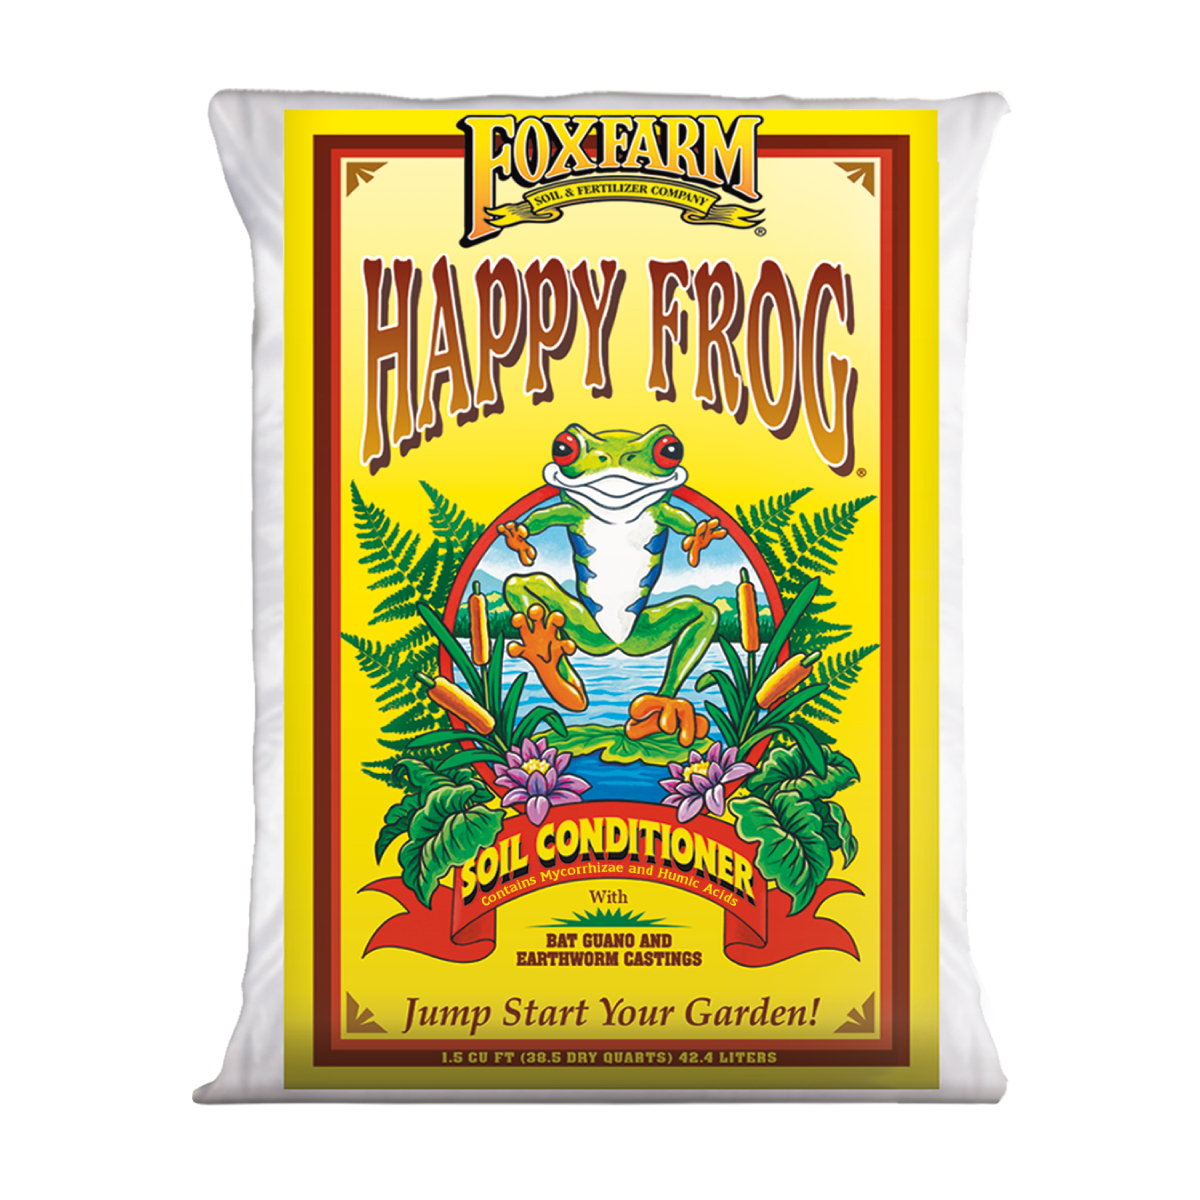 FoxFarm Happy Frog Soil Conditioner 1.5 Cubic Foot